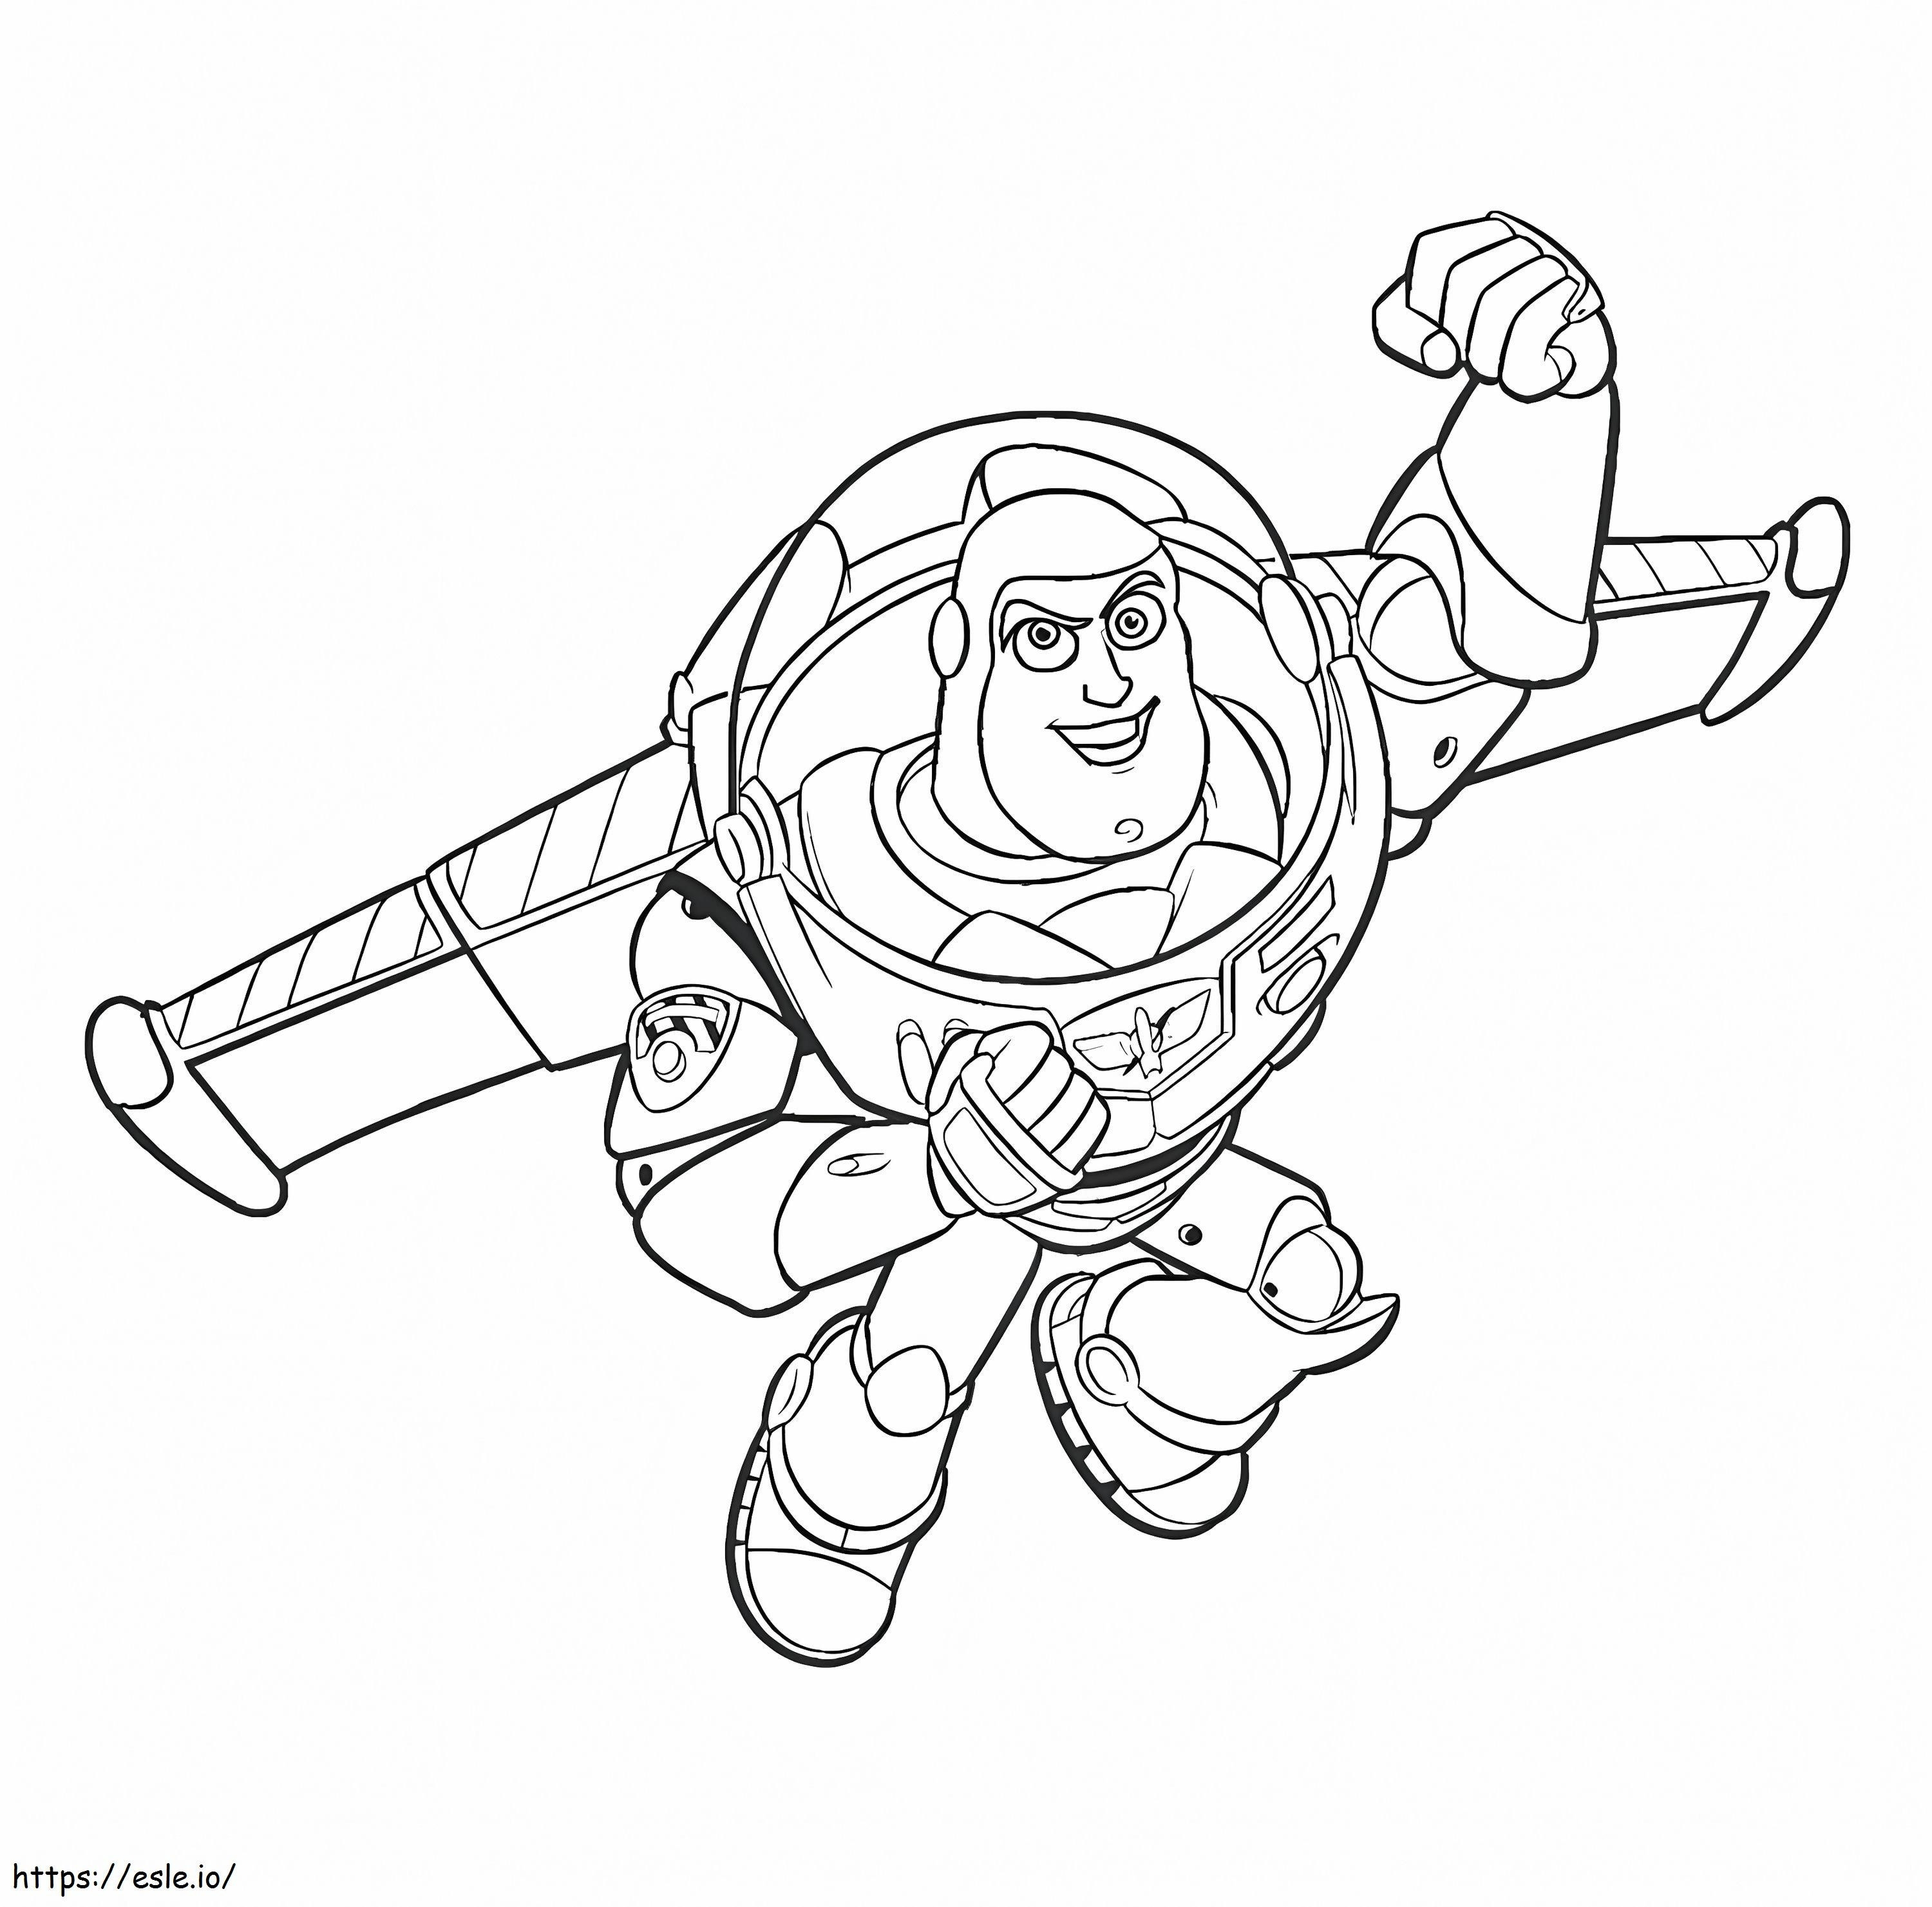 Buzz Lightyear voador e soco para colorir